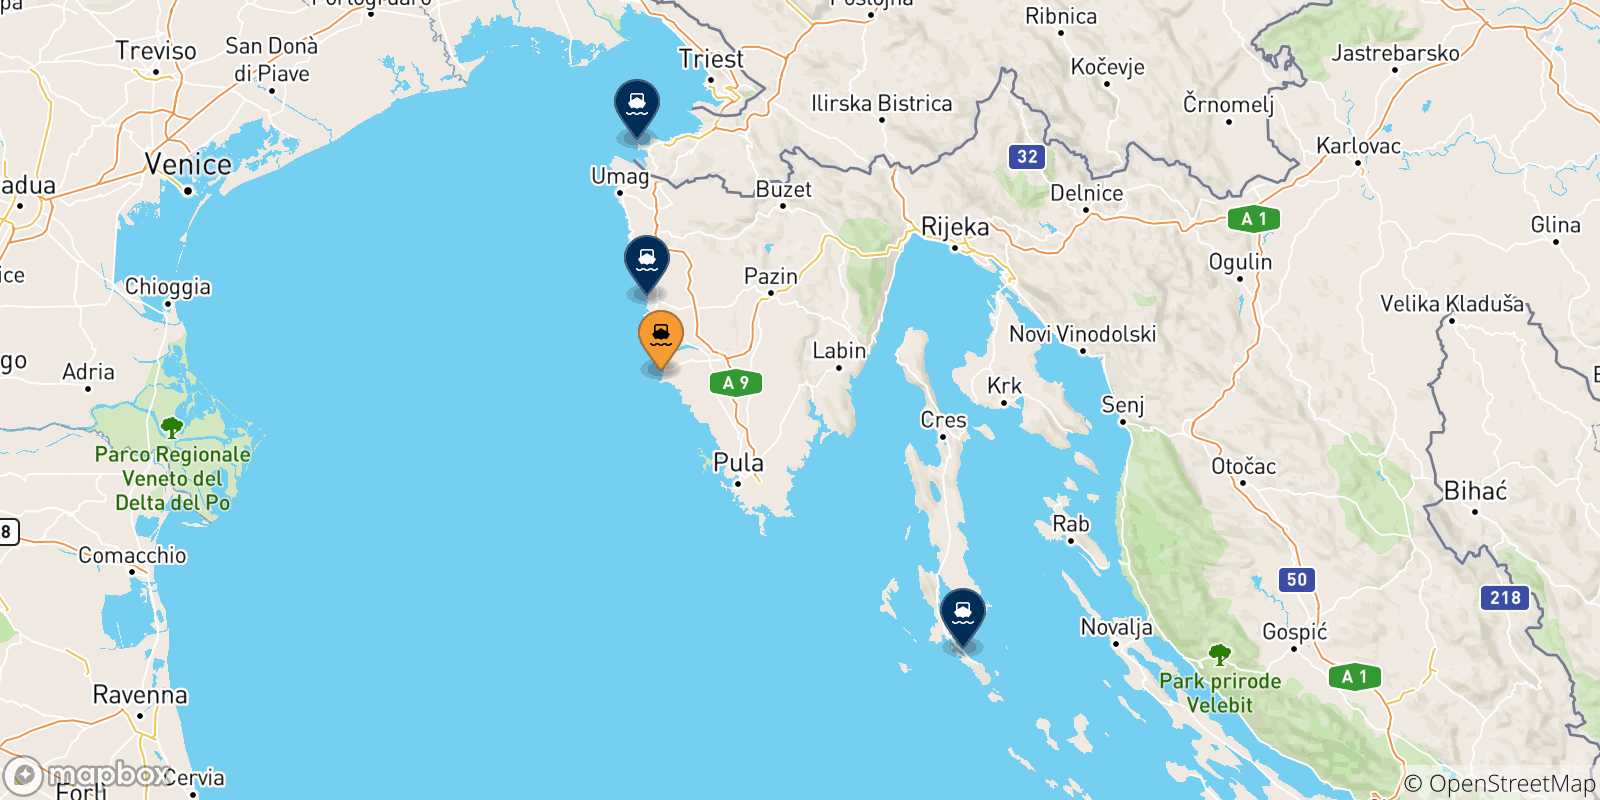 Mappa delle possibili rotte tra Rovigno e la Croazia